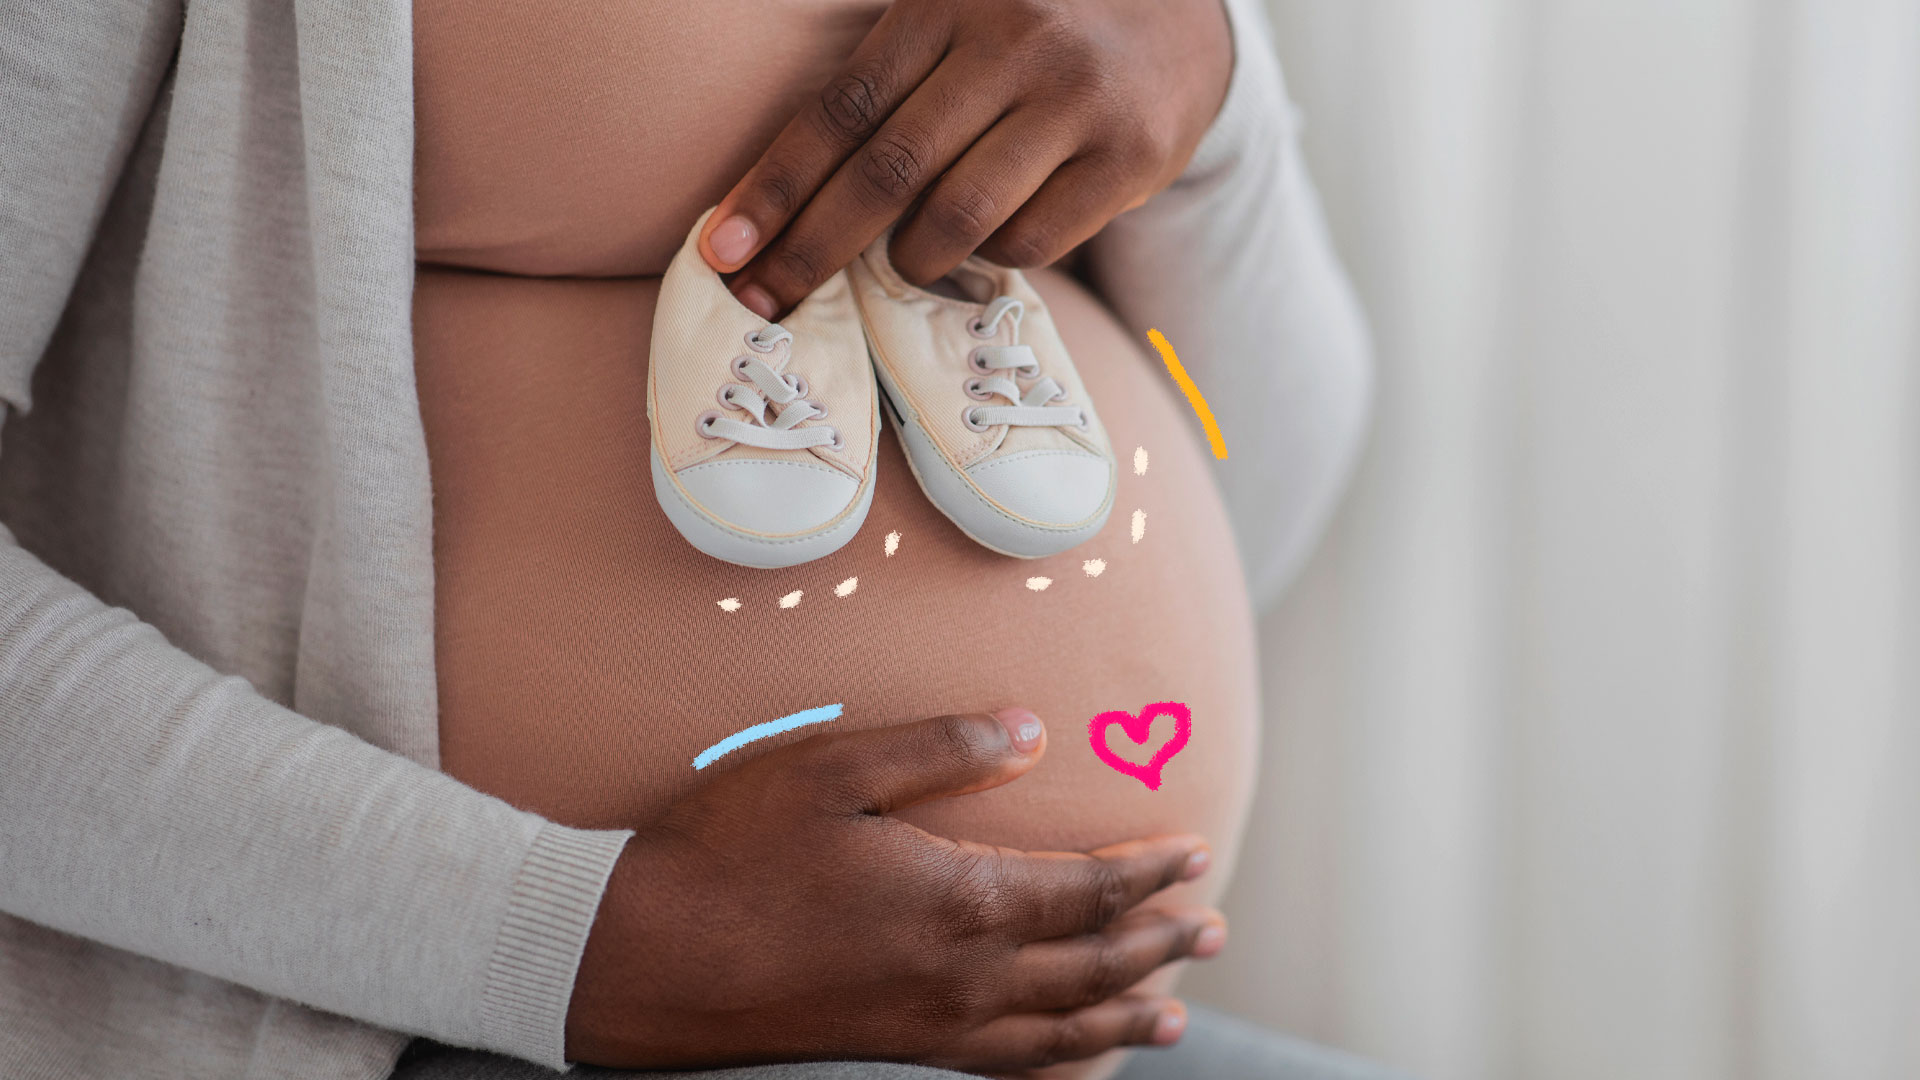 Imagem mostra em destaque a barriga de uma mulher negra gestante. Ela segura sapatos de bebê em cima da barriga e apoia uma das mãos também na barriga. A imagem possui intervenções de rabiscos coloridos.